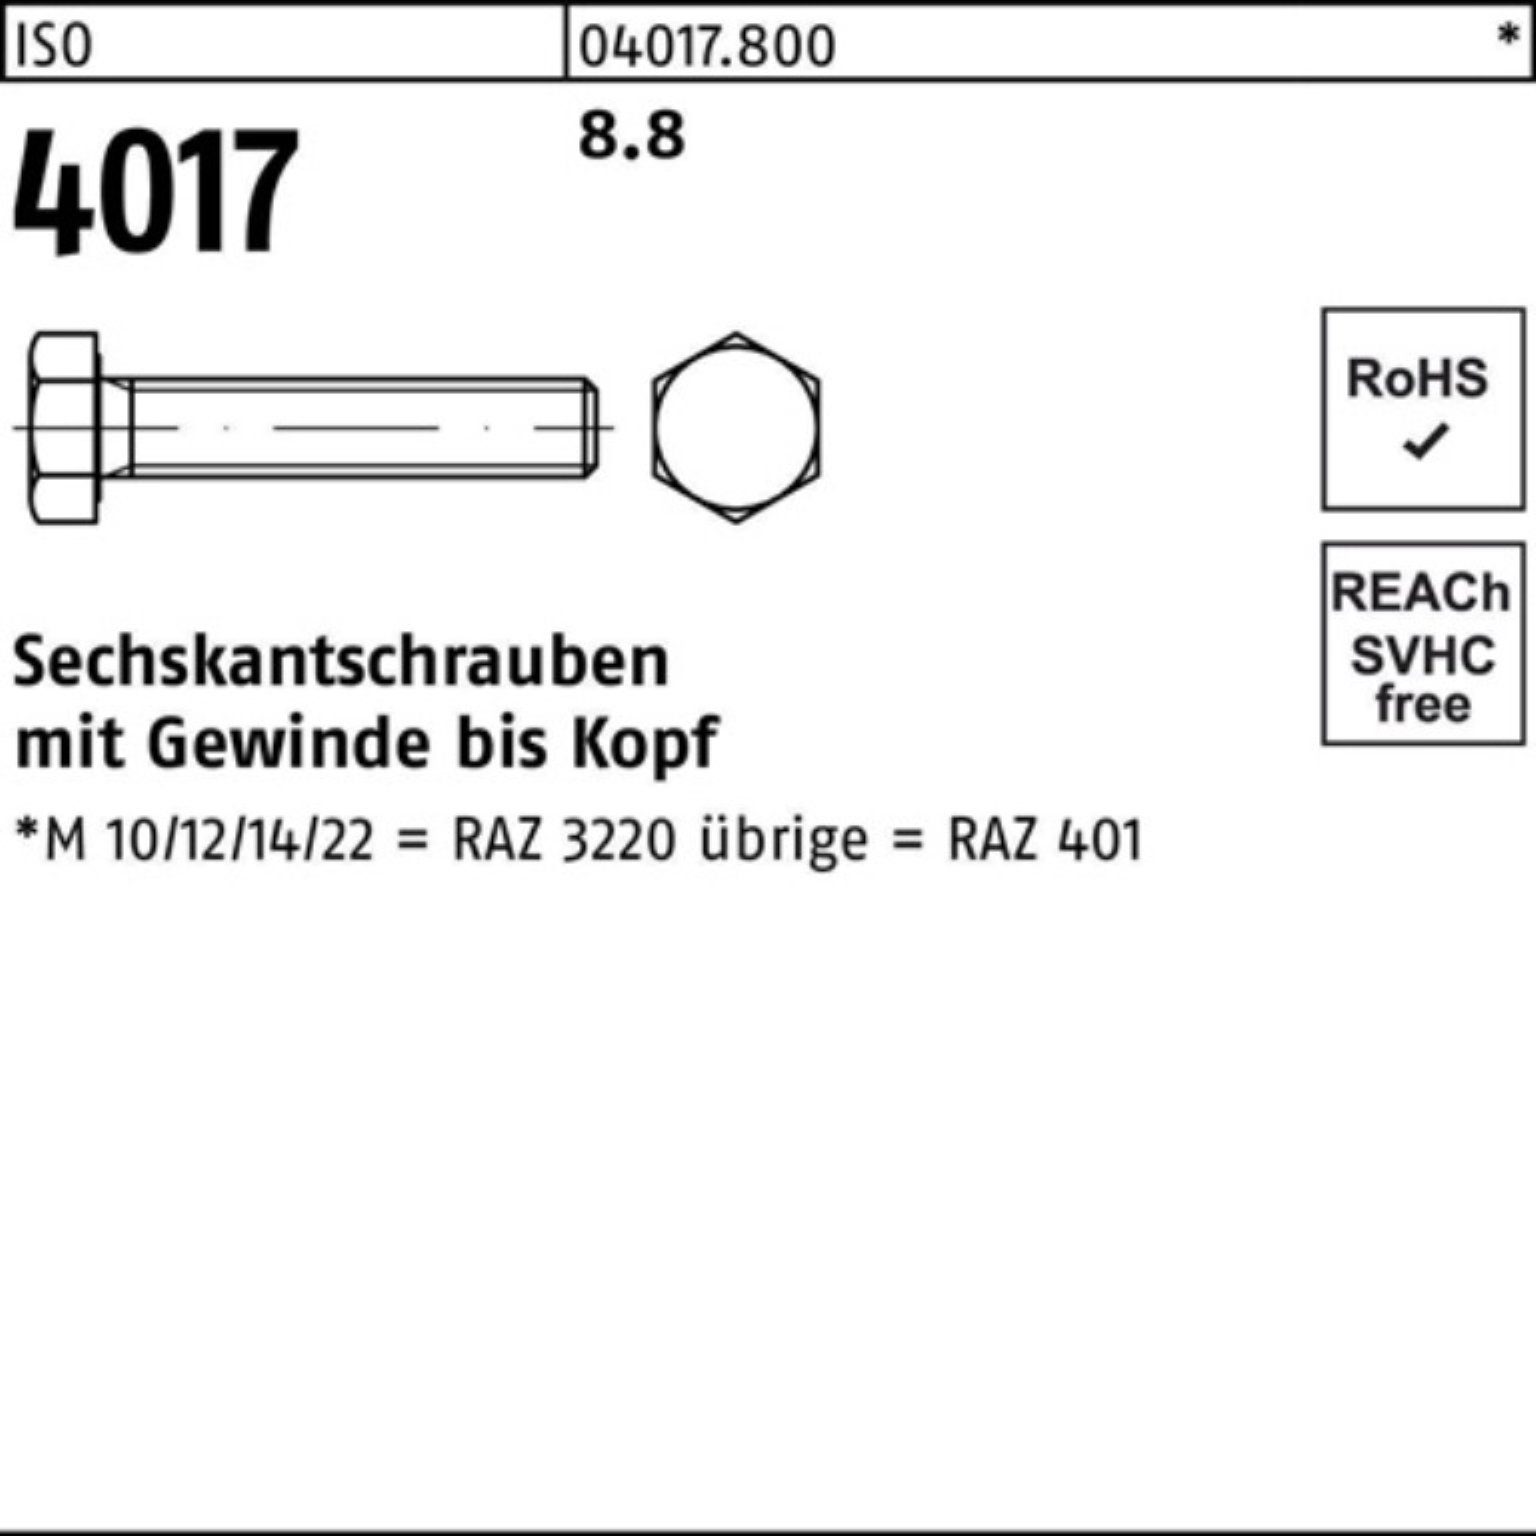 4017 Sechskantschraube Bufab 25 ISO ISO 8.8 M16x Stück Sechskantschraube VG Pack 401 95 100er